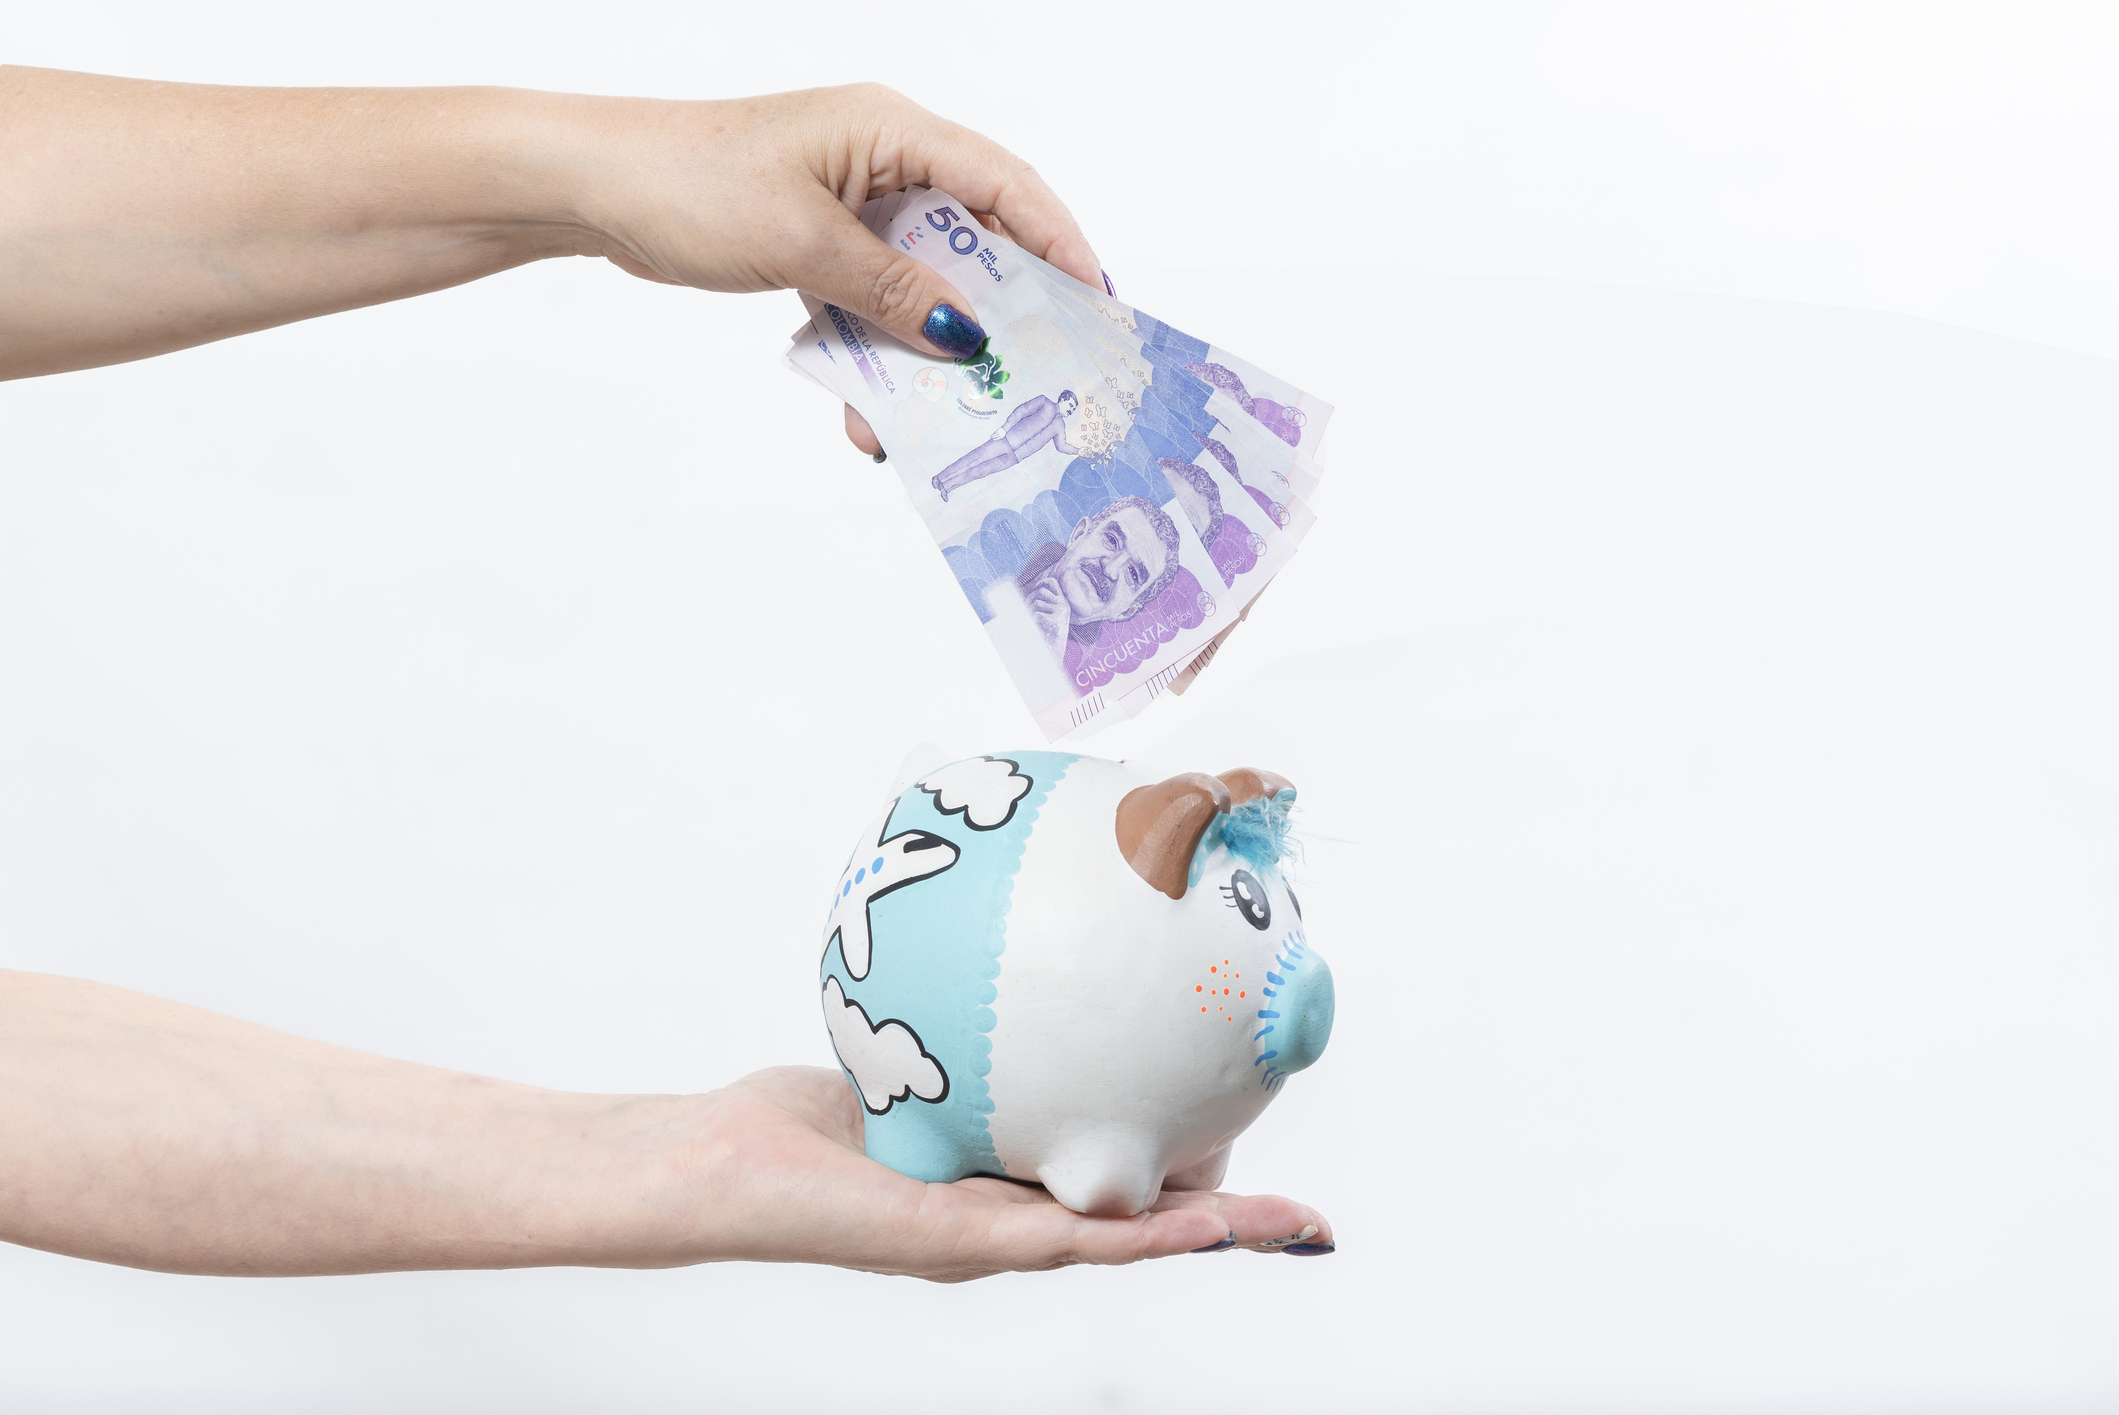 Cómo ahorrar dinero en el día a día: evitar gastos innecesarios y otras recomendaciones clave para que el dinero le alcance hasta su próximo sueldo.